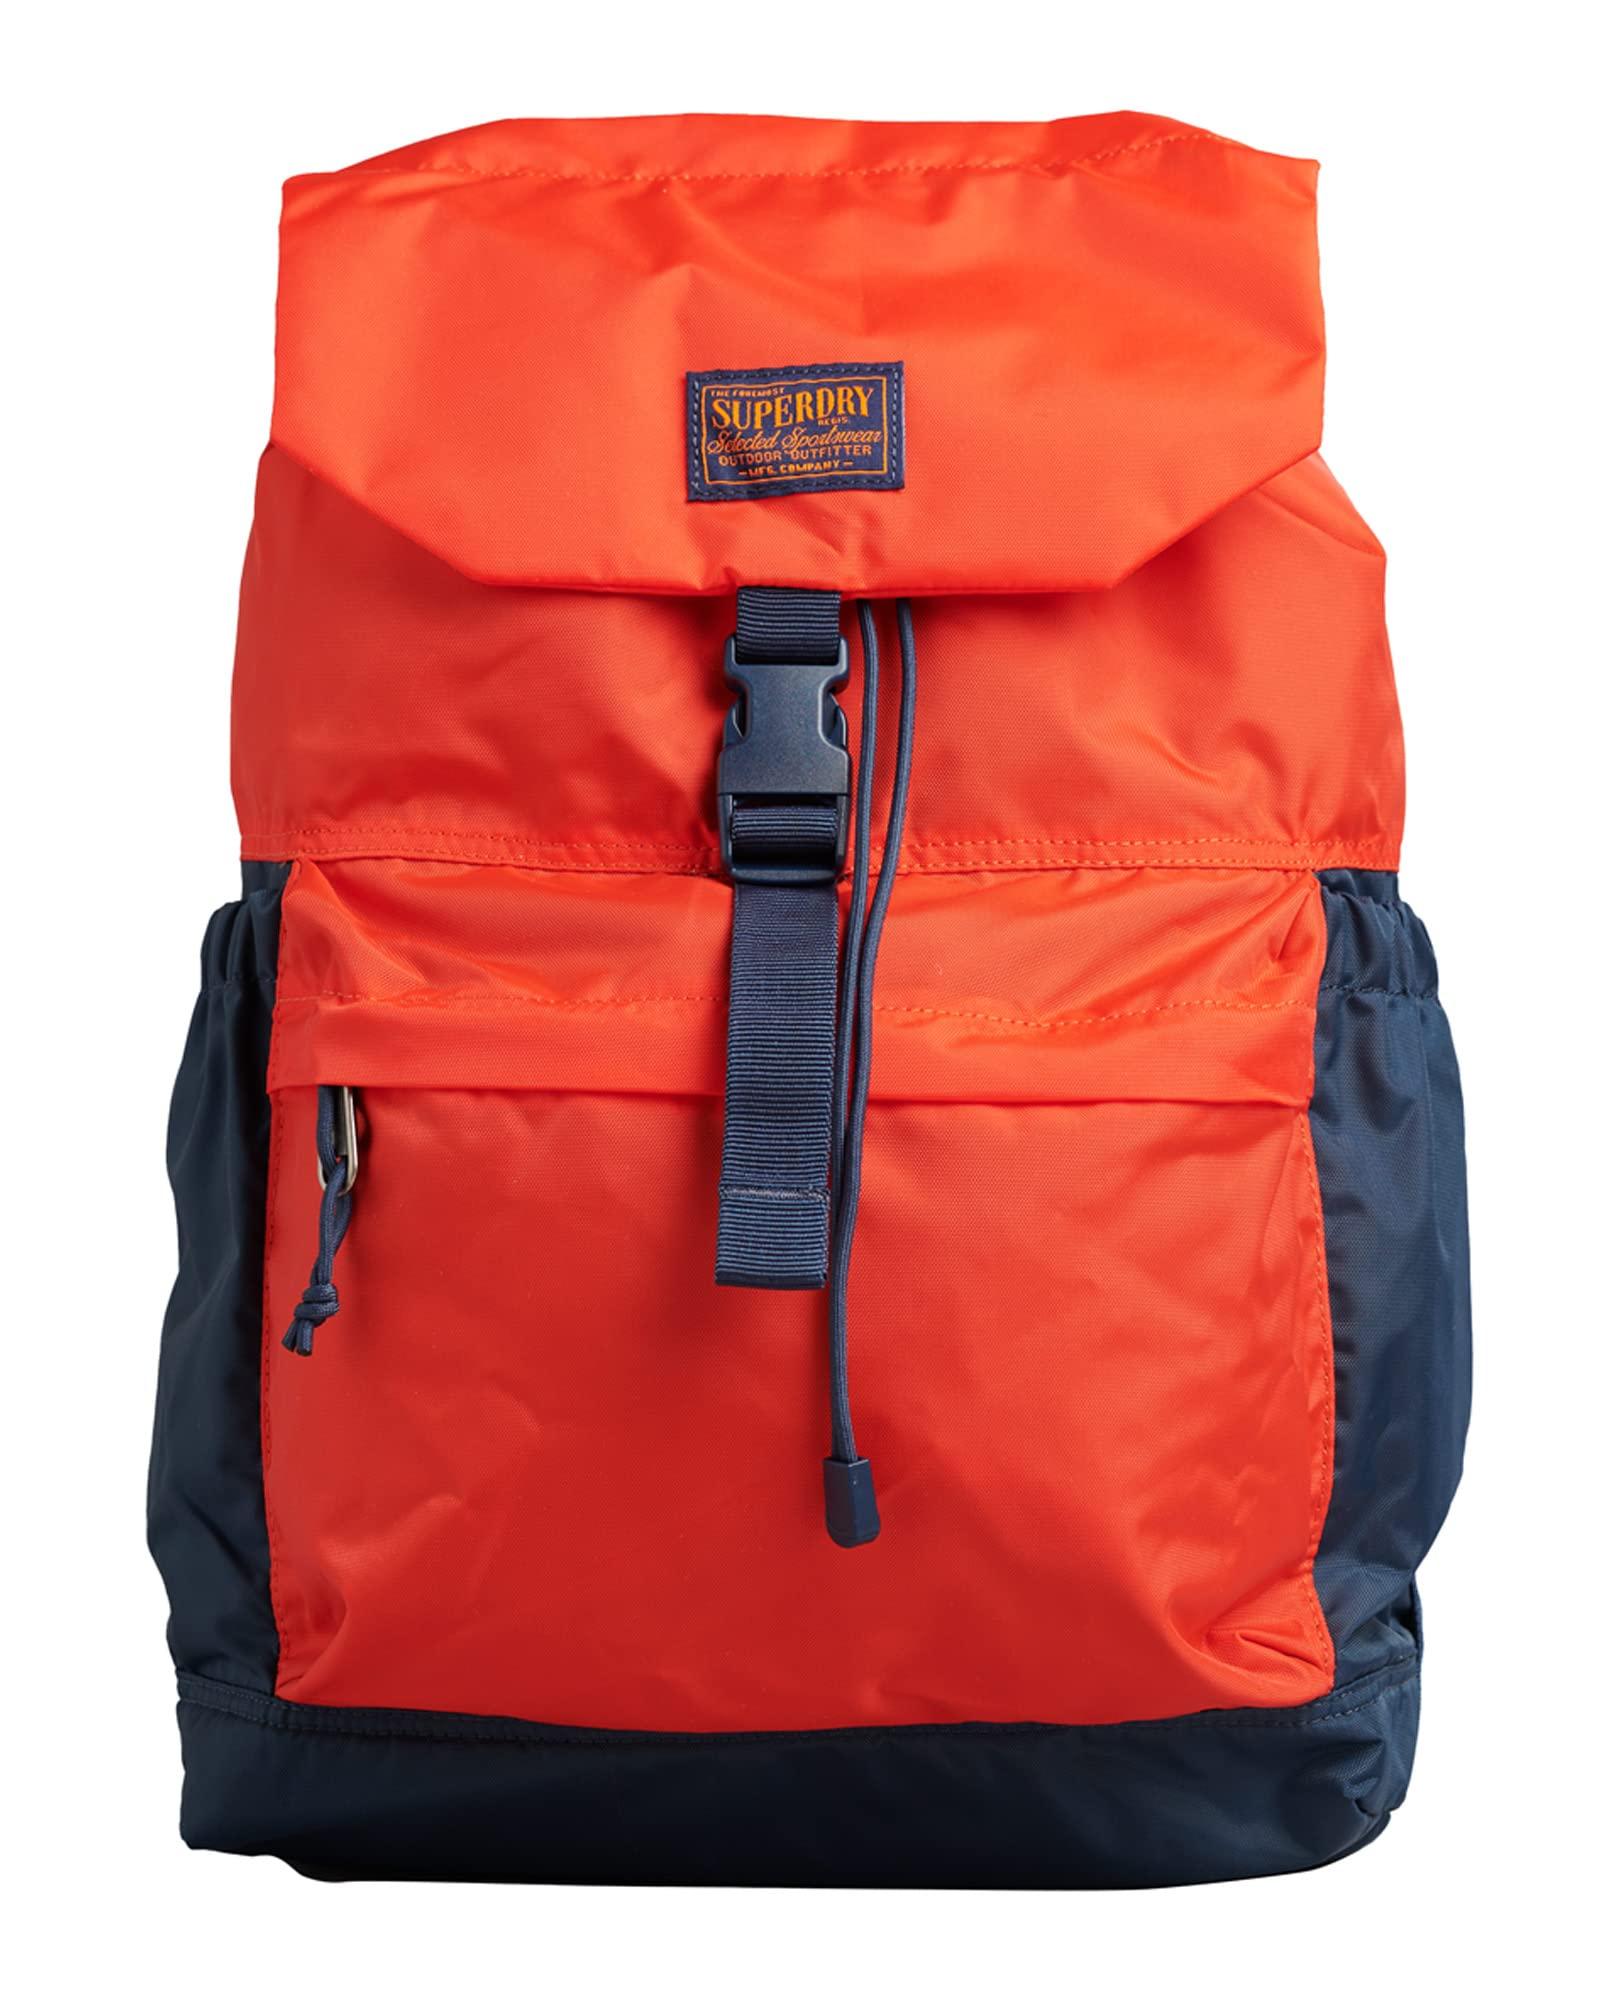 Superdry Toploader Backpack Orange in Red | Lyst UK